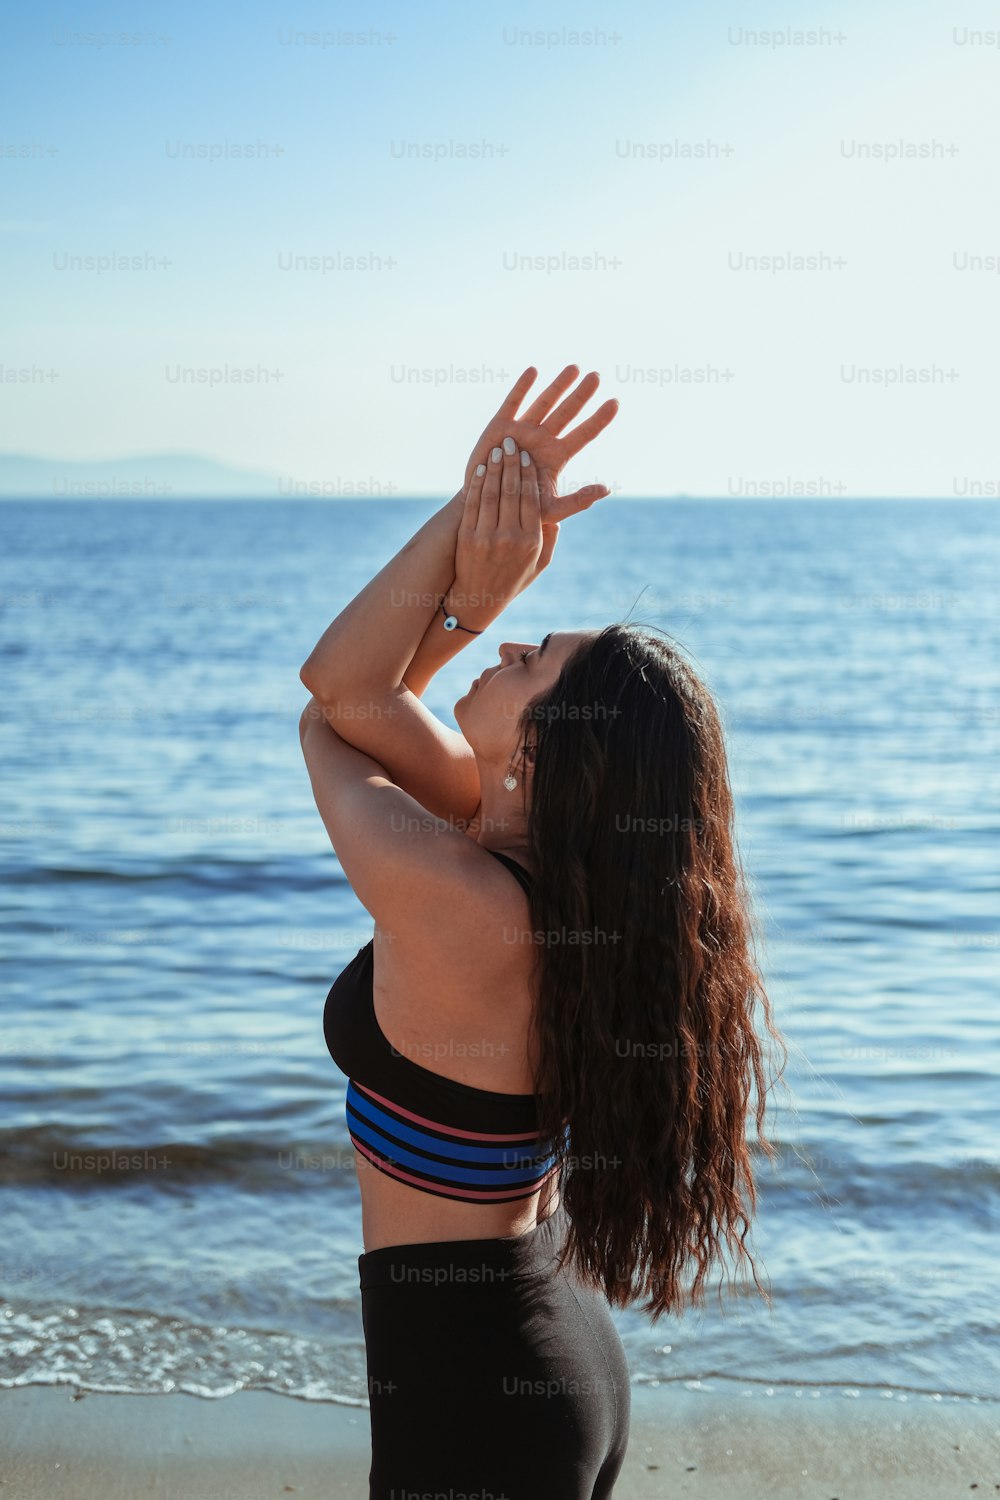 Une femme debout sur une plage, les mains en l’air